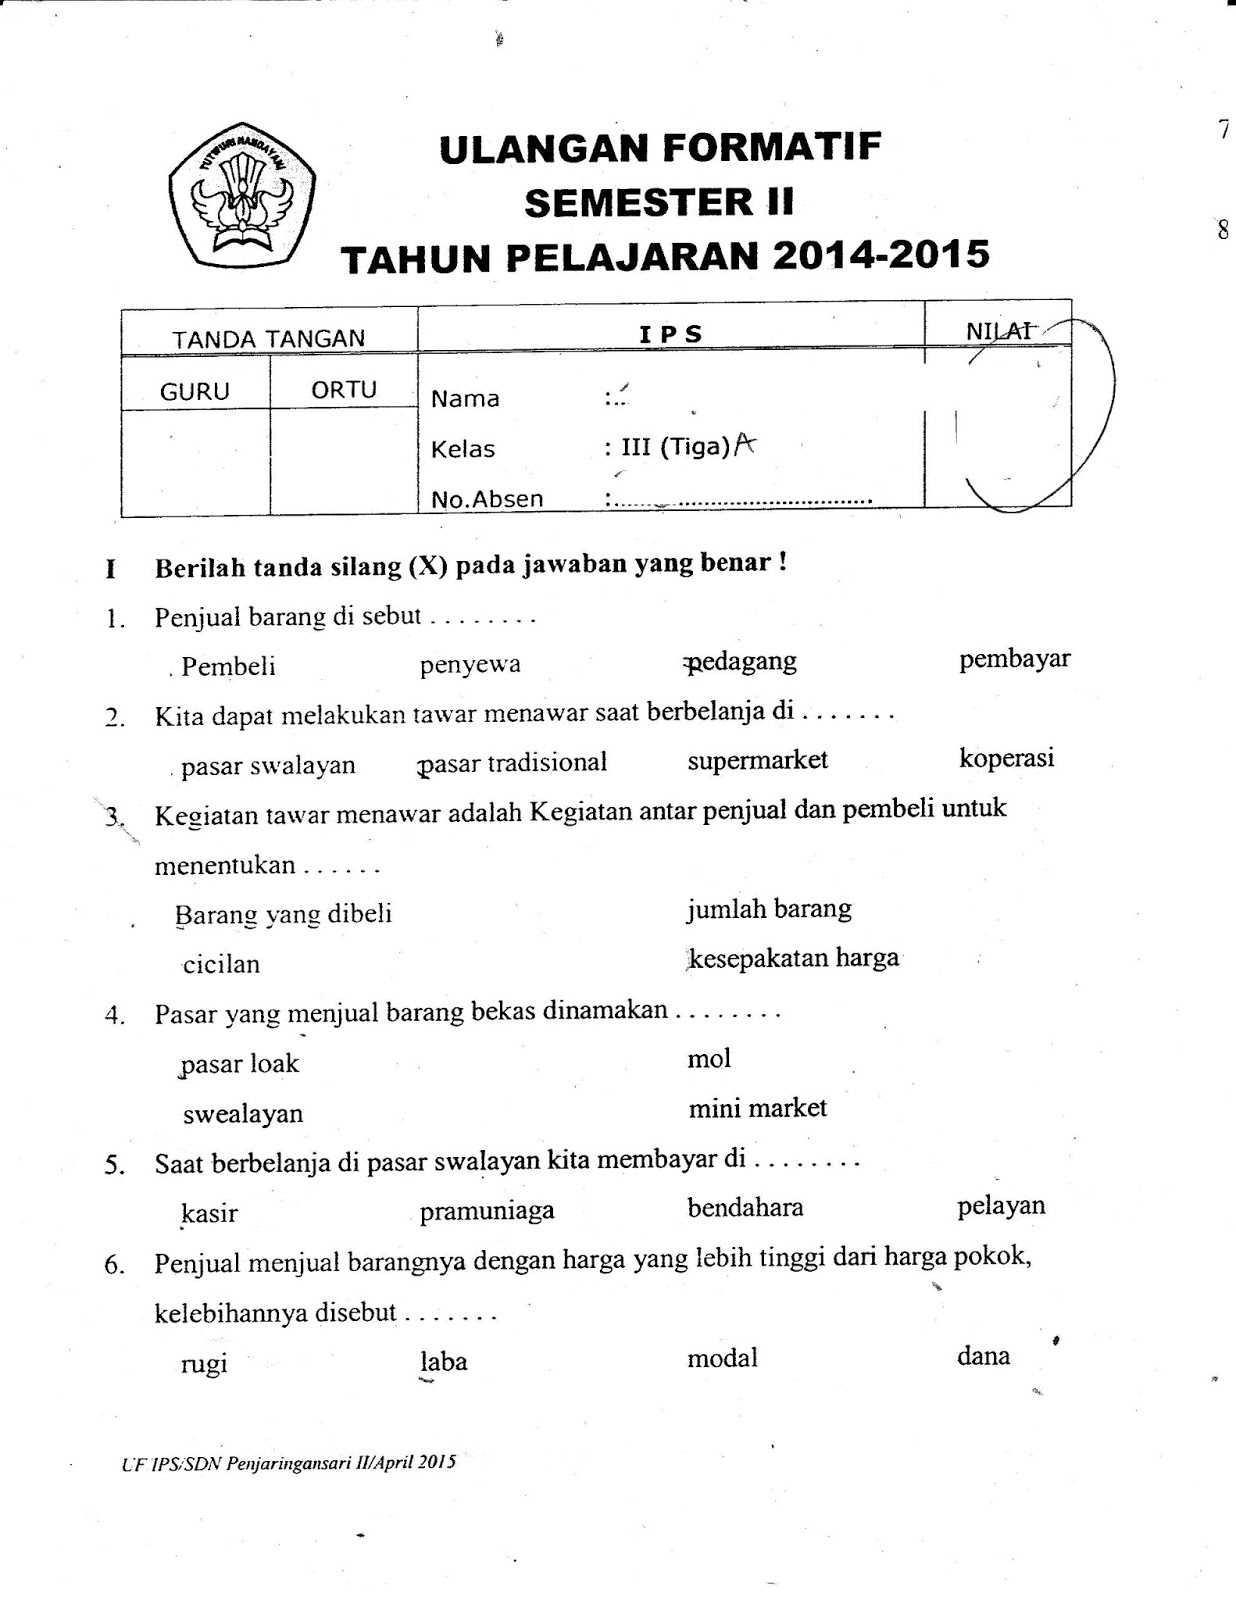 Formatif IPS Kelas3 SD TA 2014 2015 Semester GENAP